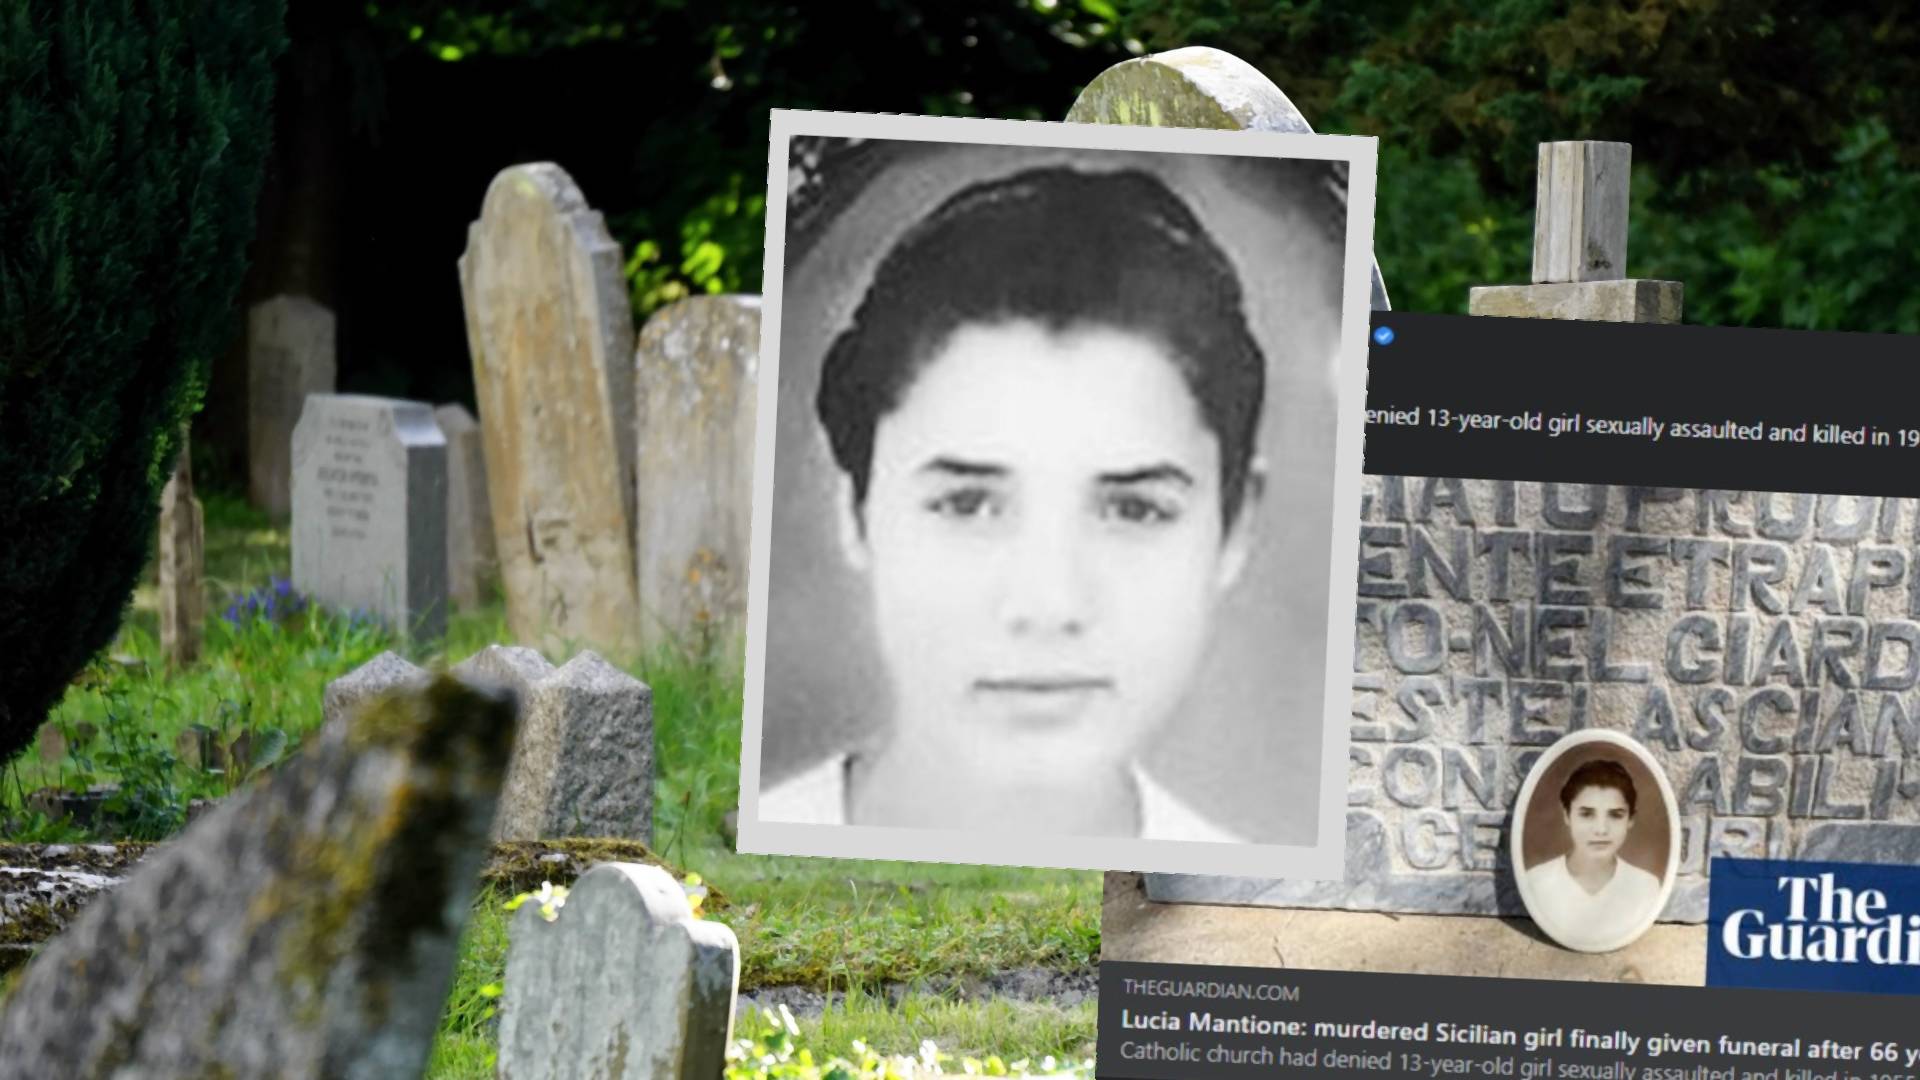 Lucia Mantione została zgwałcona i zamordowana. Przez 66 lat Kościół katolicki odmawiał pogrzebu